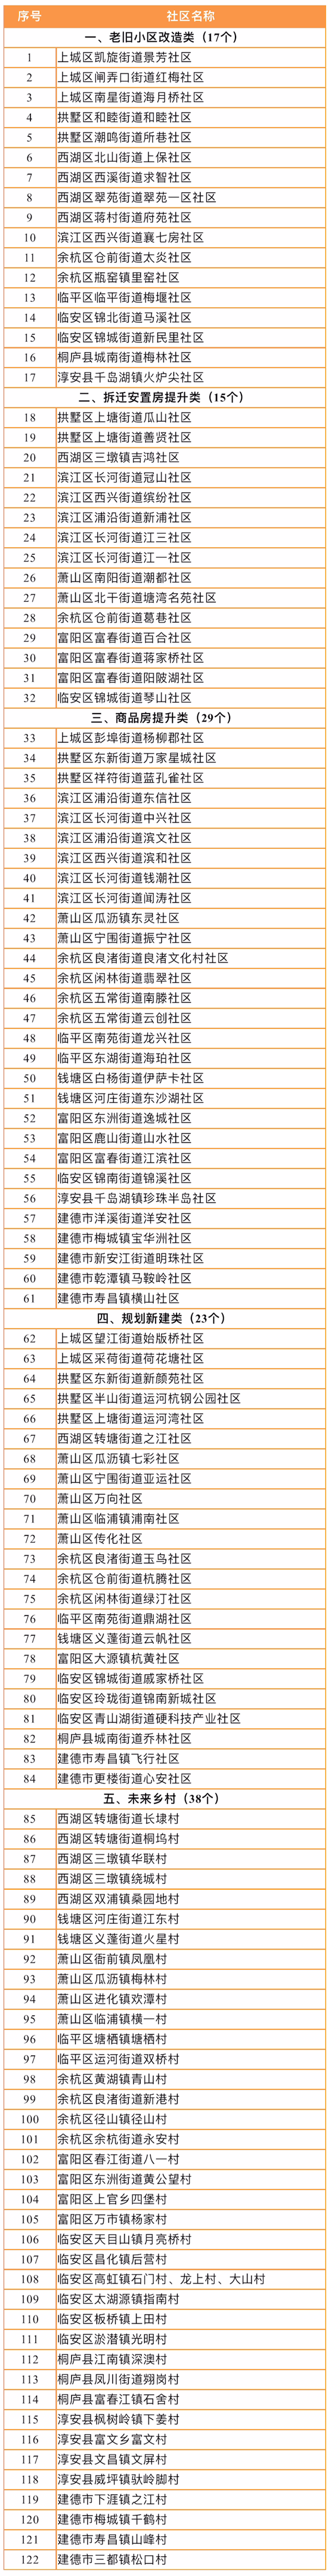 杭州市2021年未来社区创建名单共计122个社区